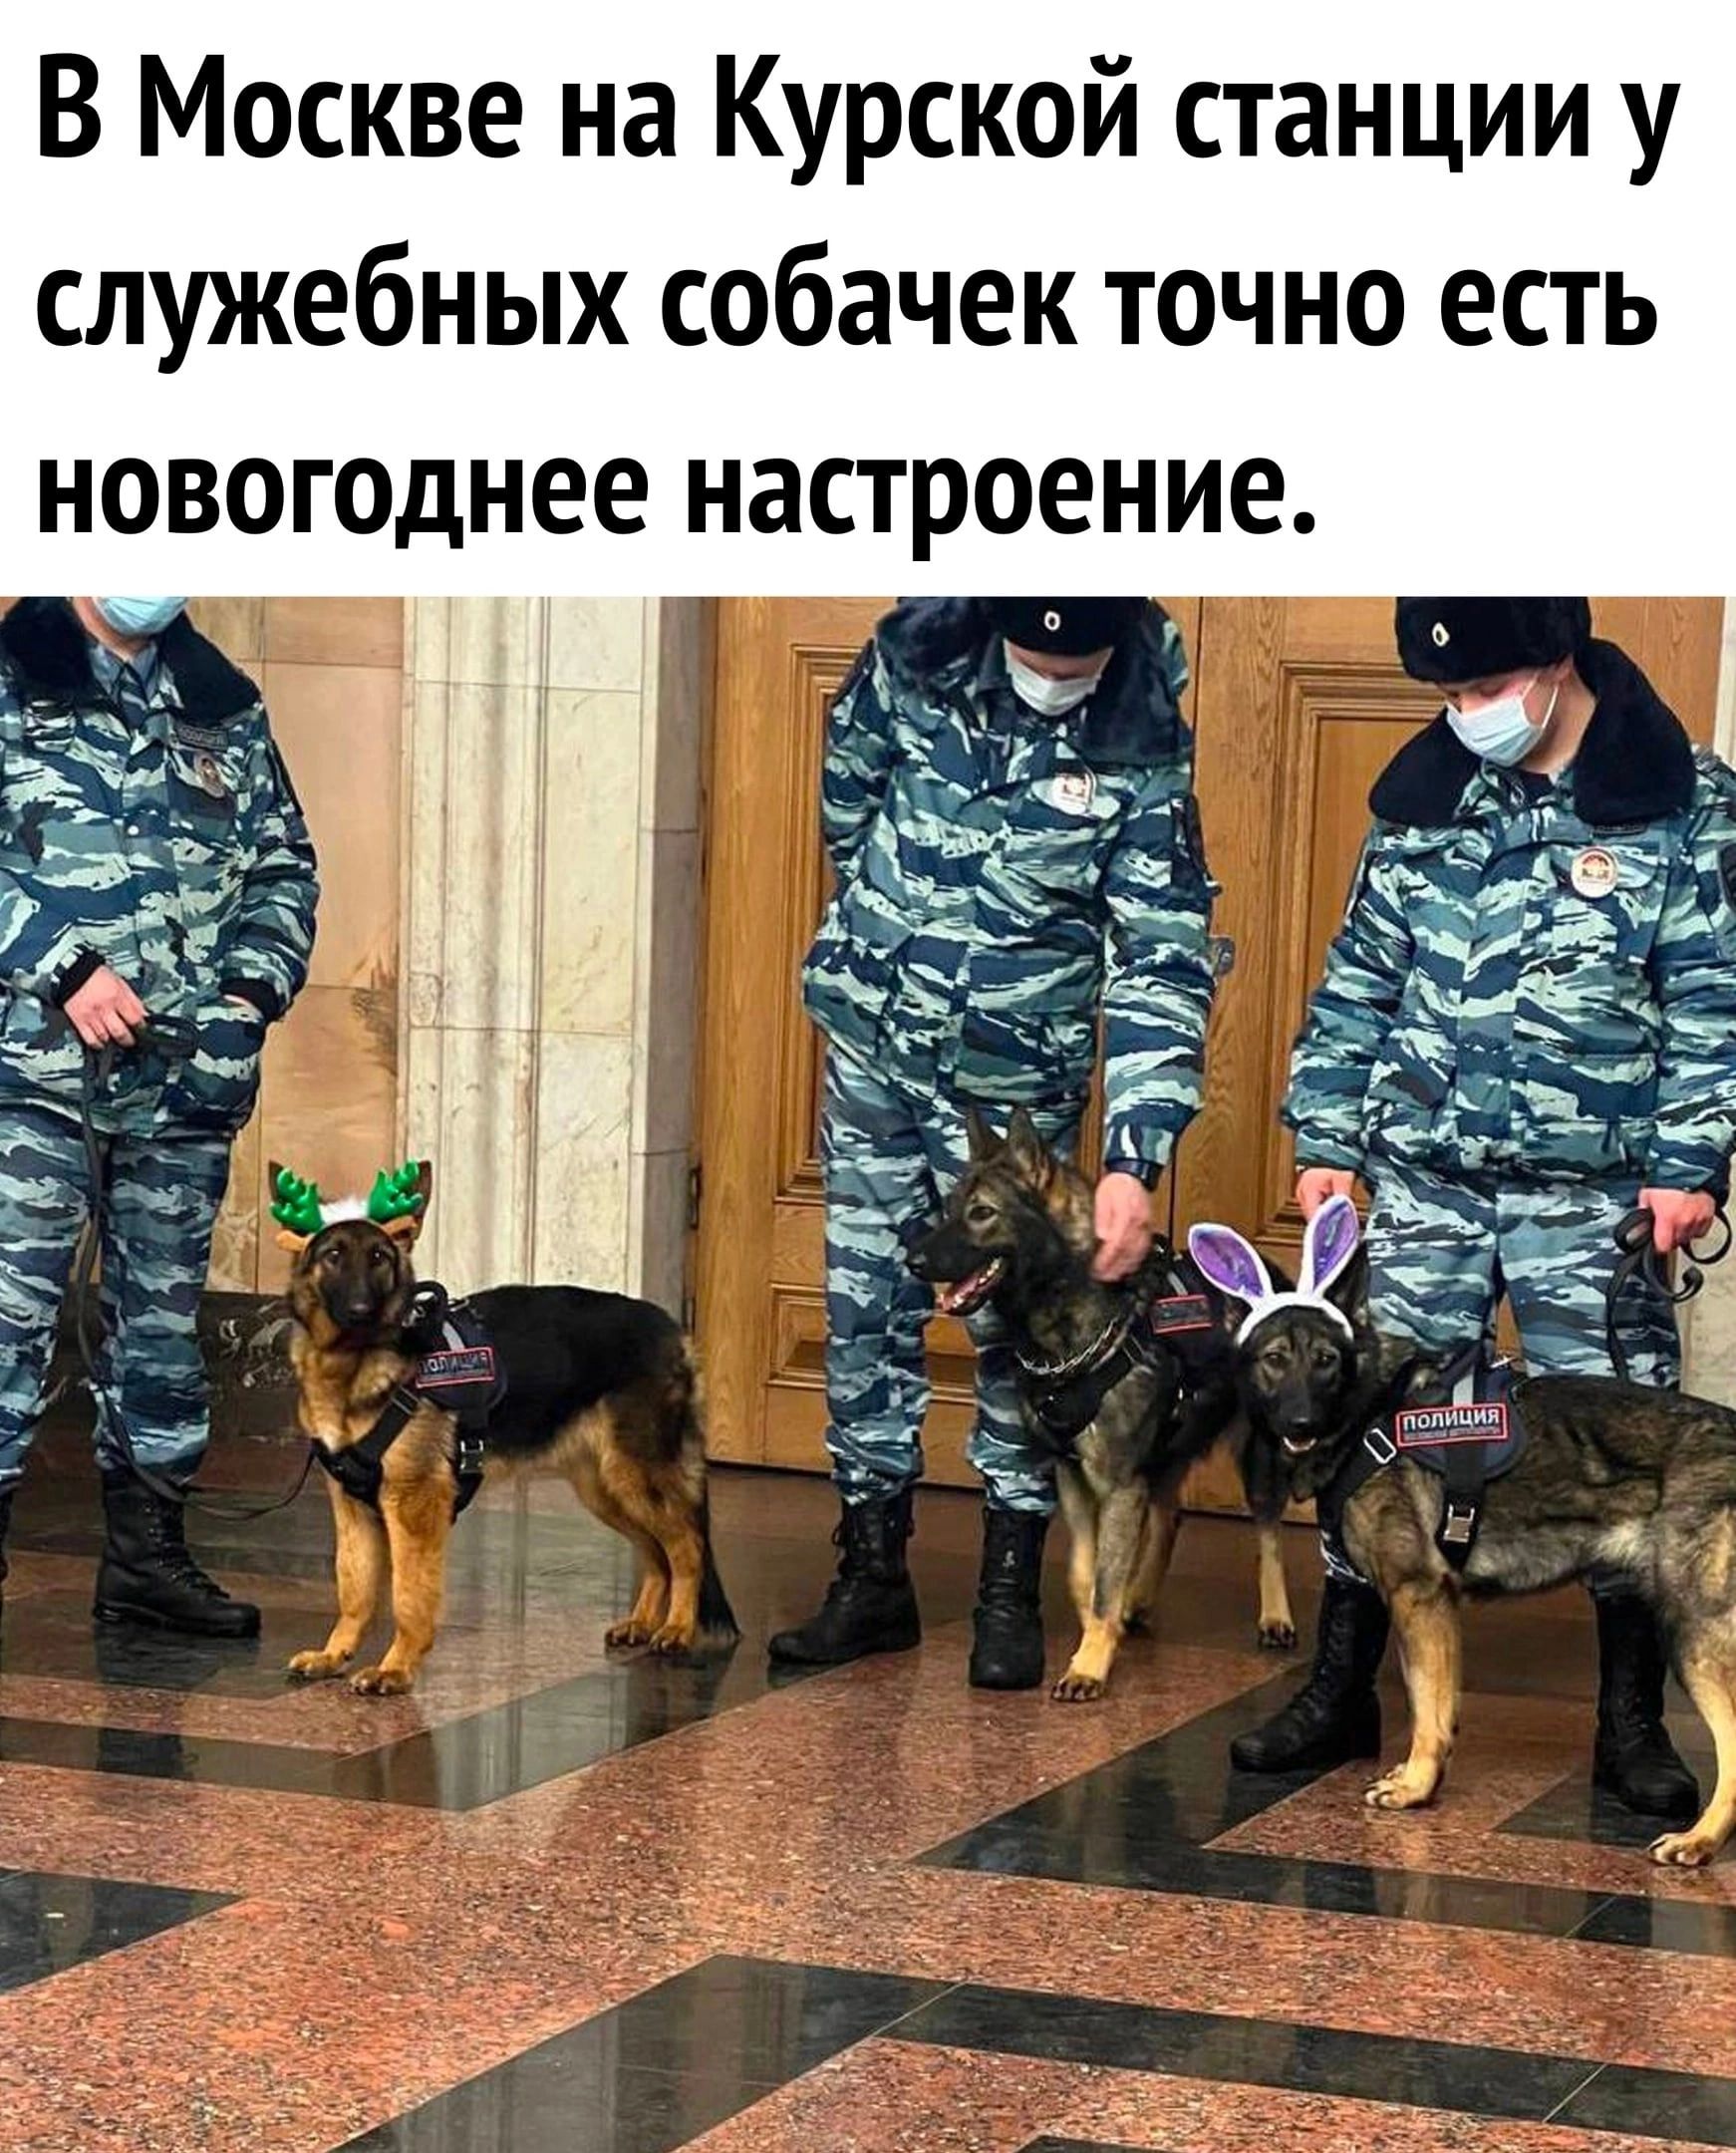 В Москве на Курской станции у служебных собачек точно есть новогоднее настроение